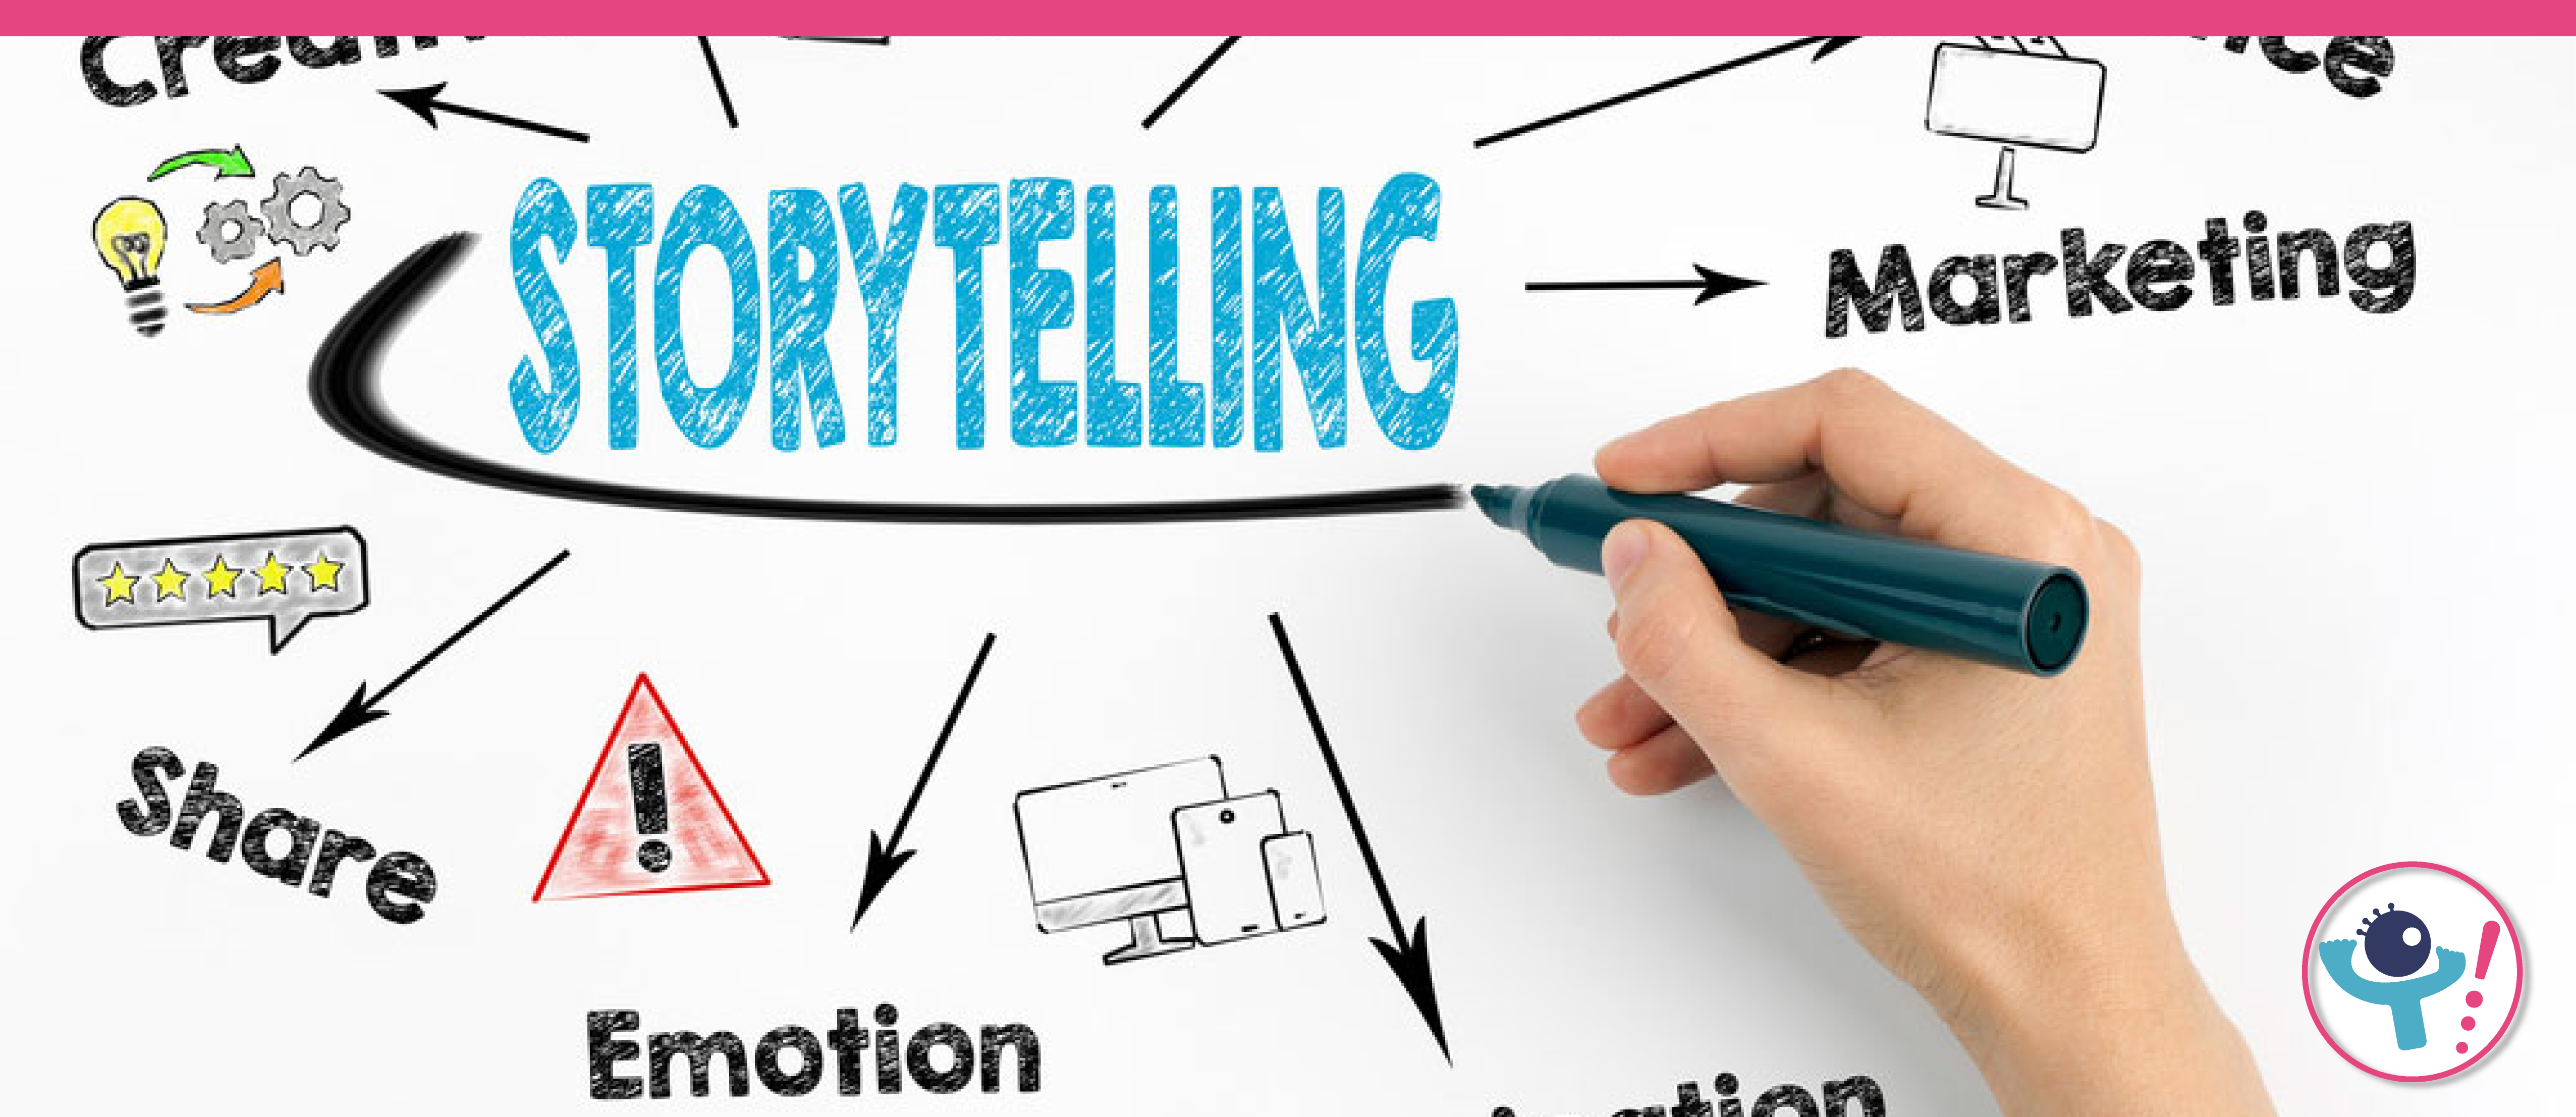 El storytelling en la educación